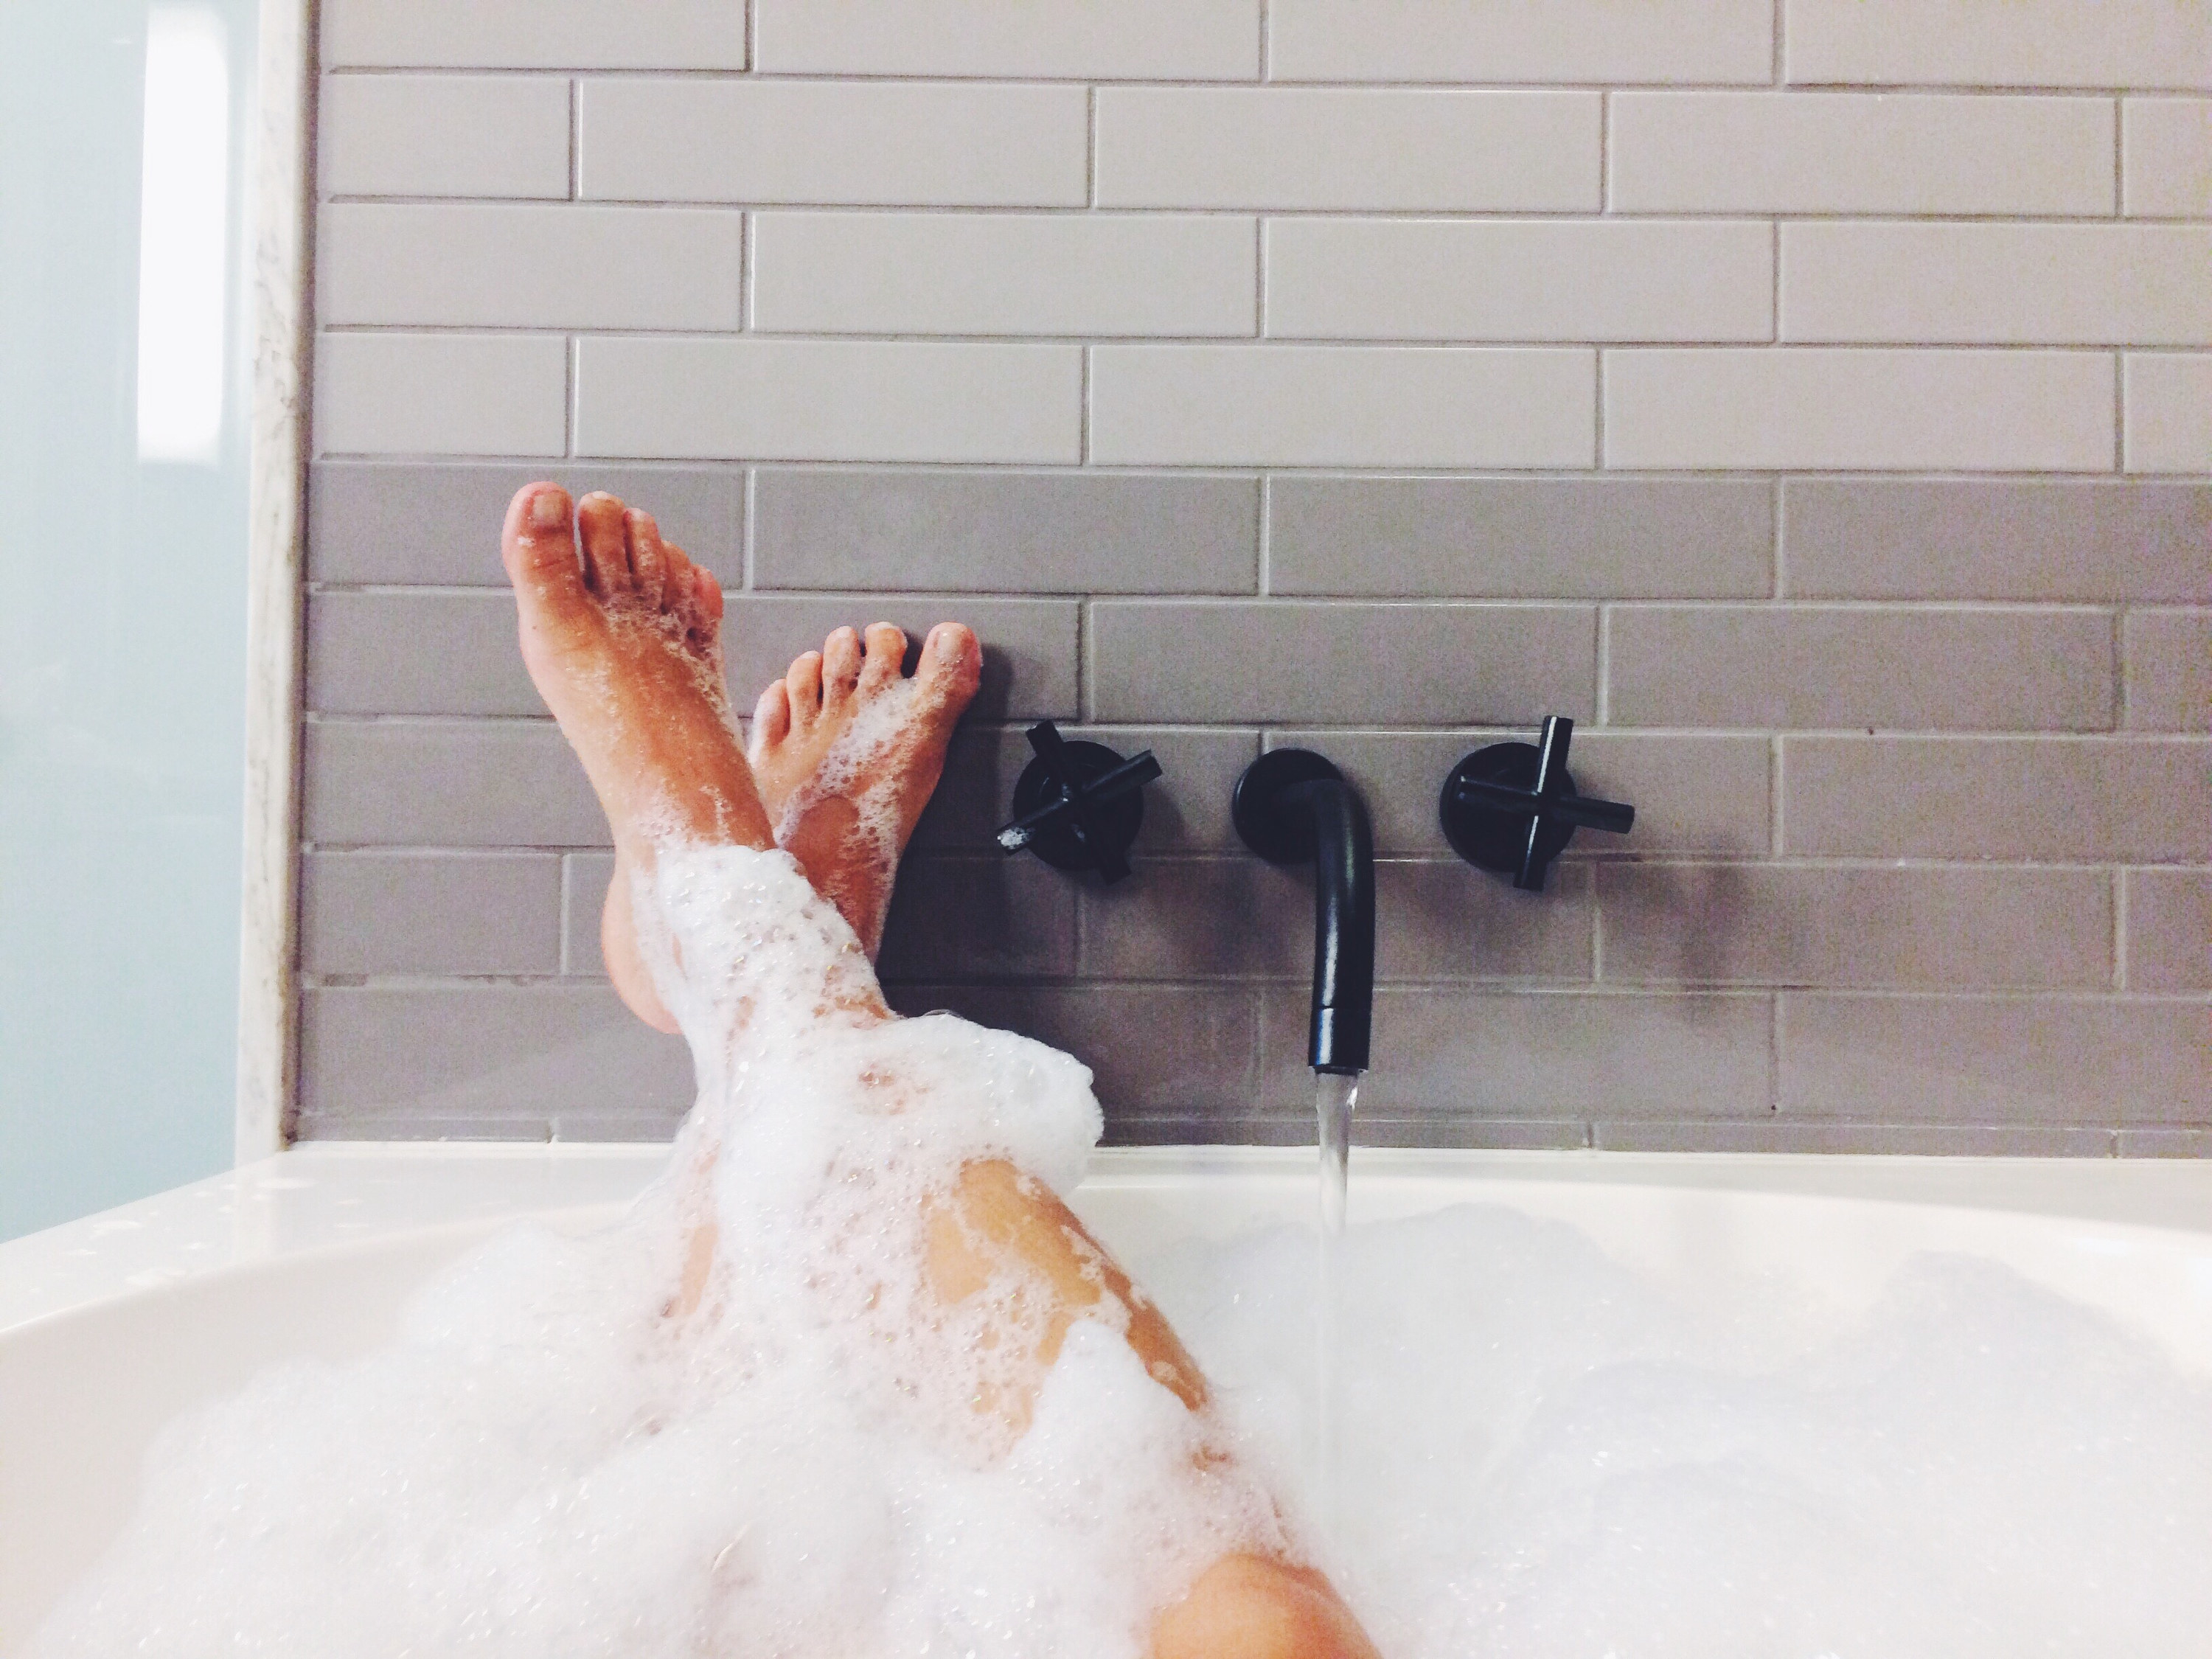 Someone&#x27;s legs in a bubble bath